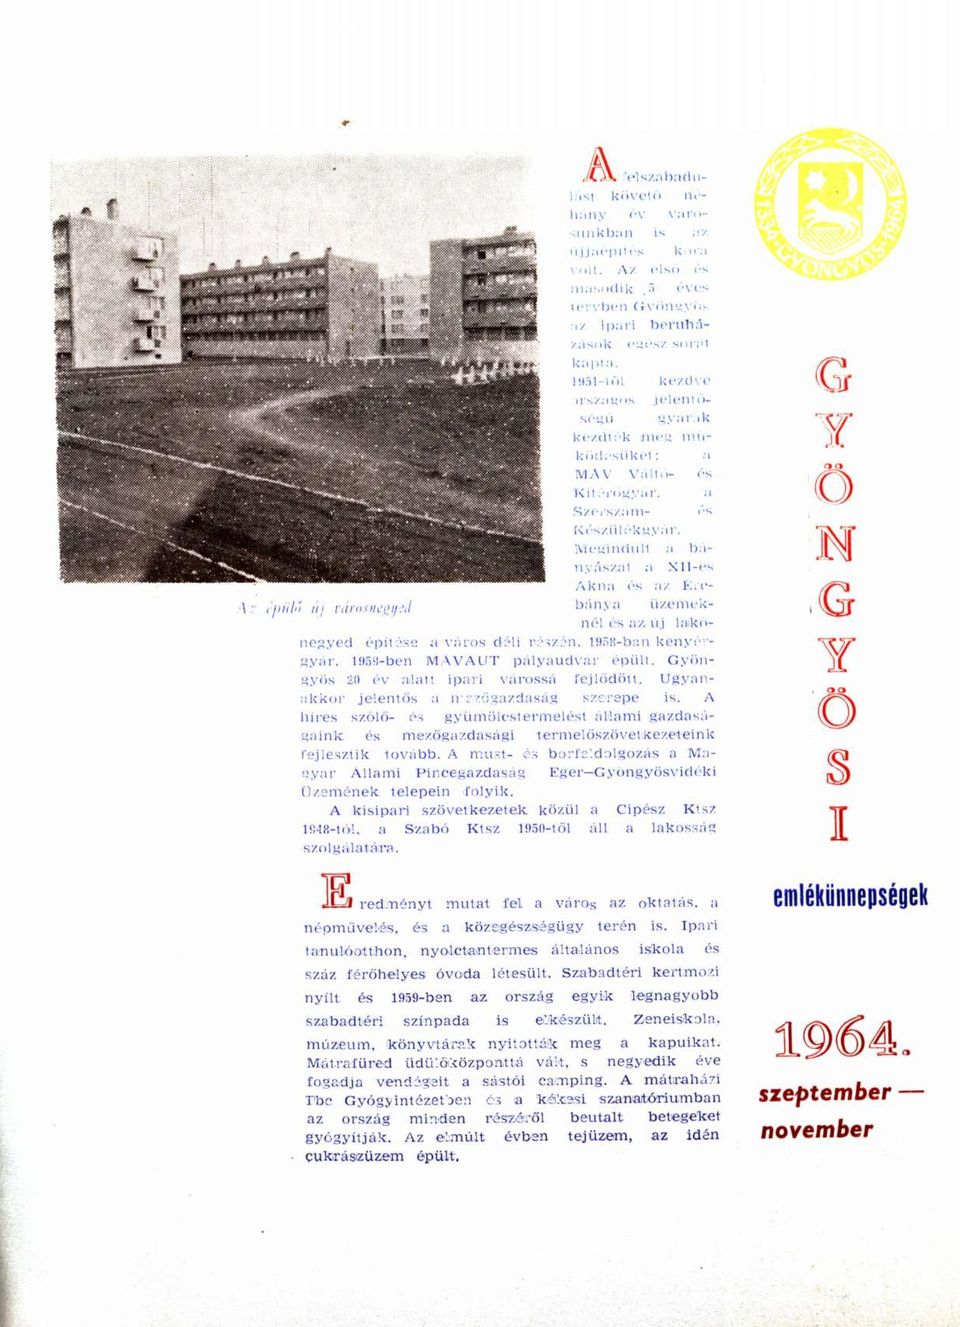 Megindult a bányászat a Xll-es Akna és az Ércbánya üzemeknél és az új 1akónegyed építése a város déli részén. 1958-ban kenyérgyár, 1959-ben MÁVAUT pályaudvar épült.